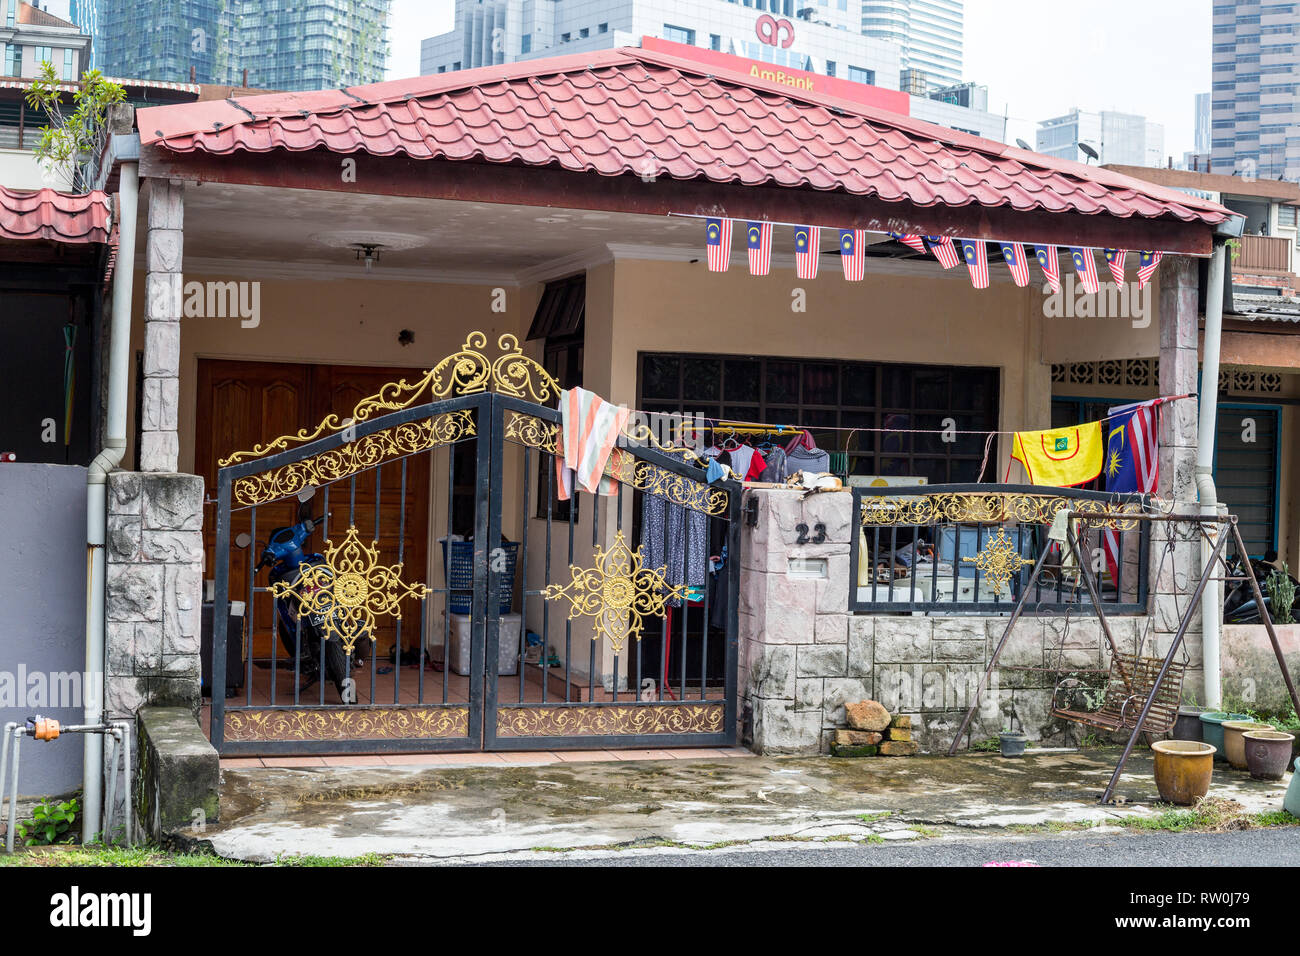 Kampung Baru, typique maison familiale privée en Enclave malaisienne traditionnelle, Kuala Lumpur, Malaisie. Banque D'Images